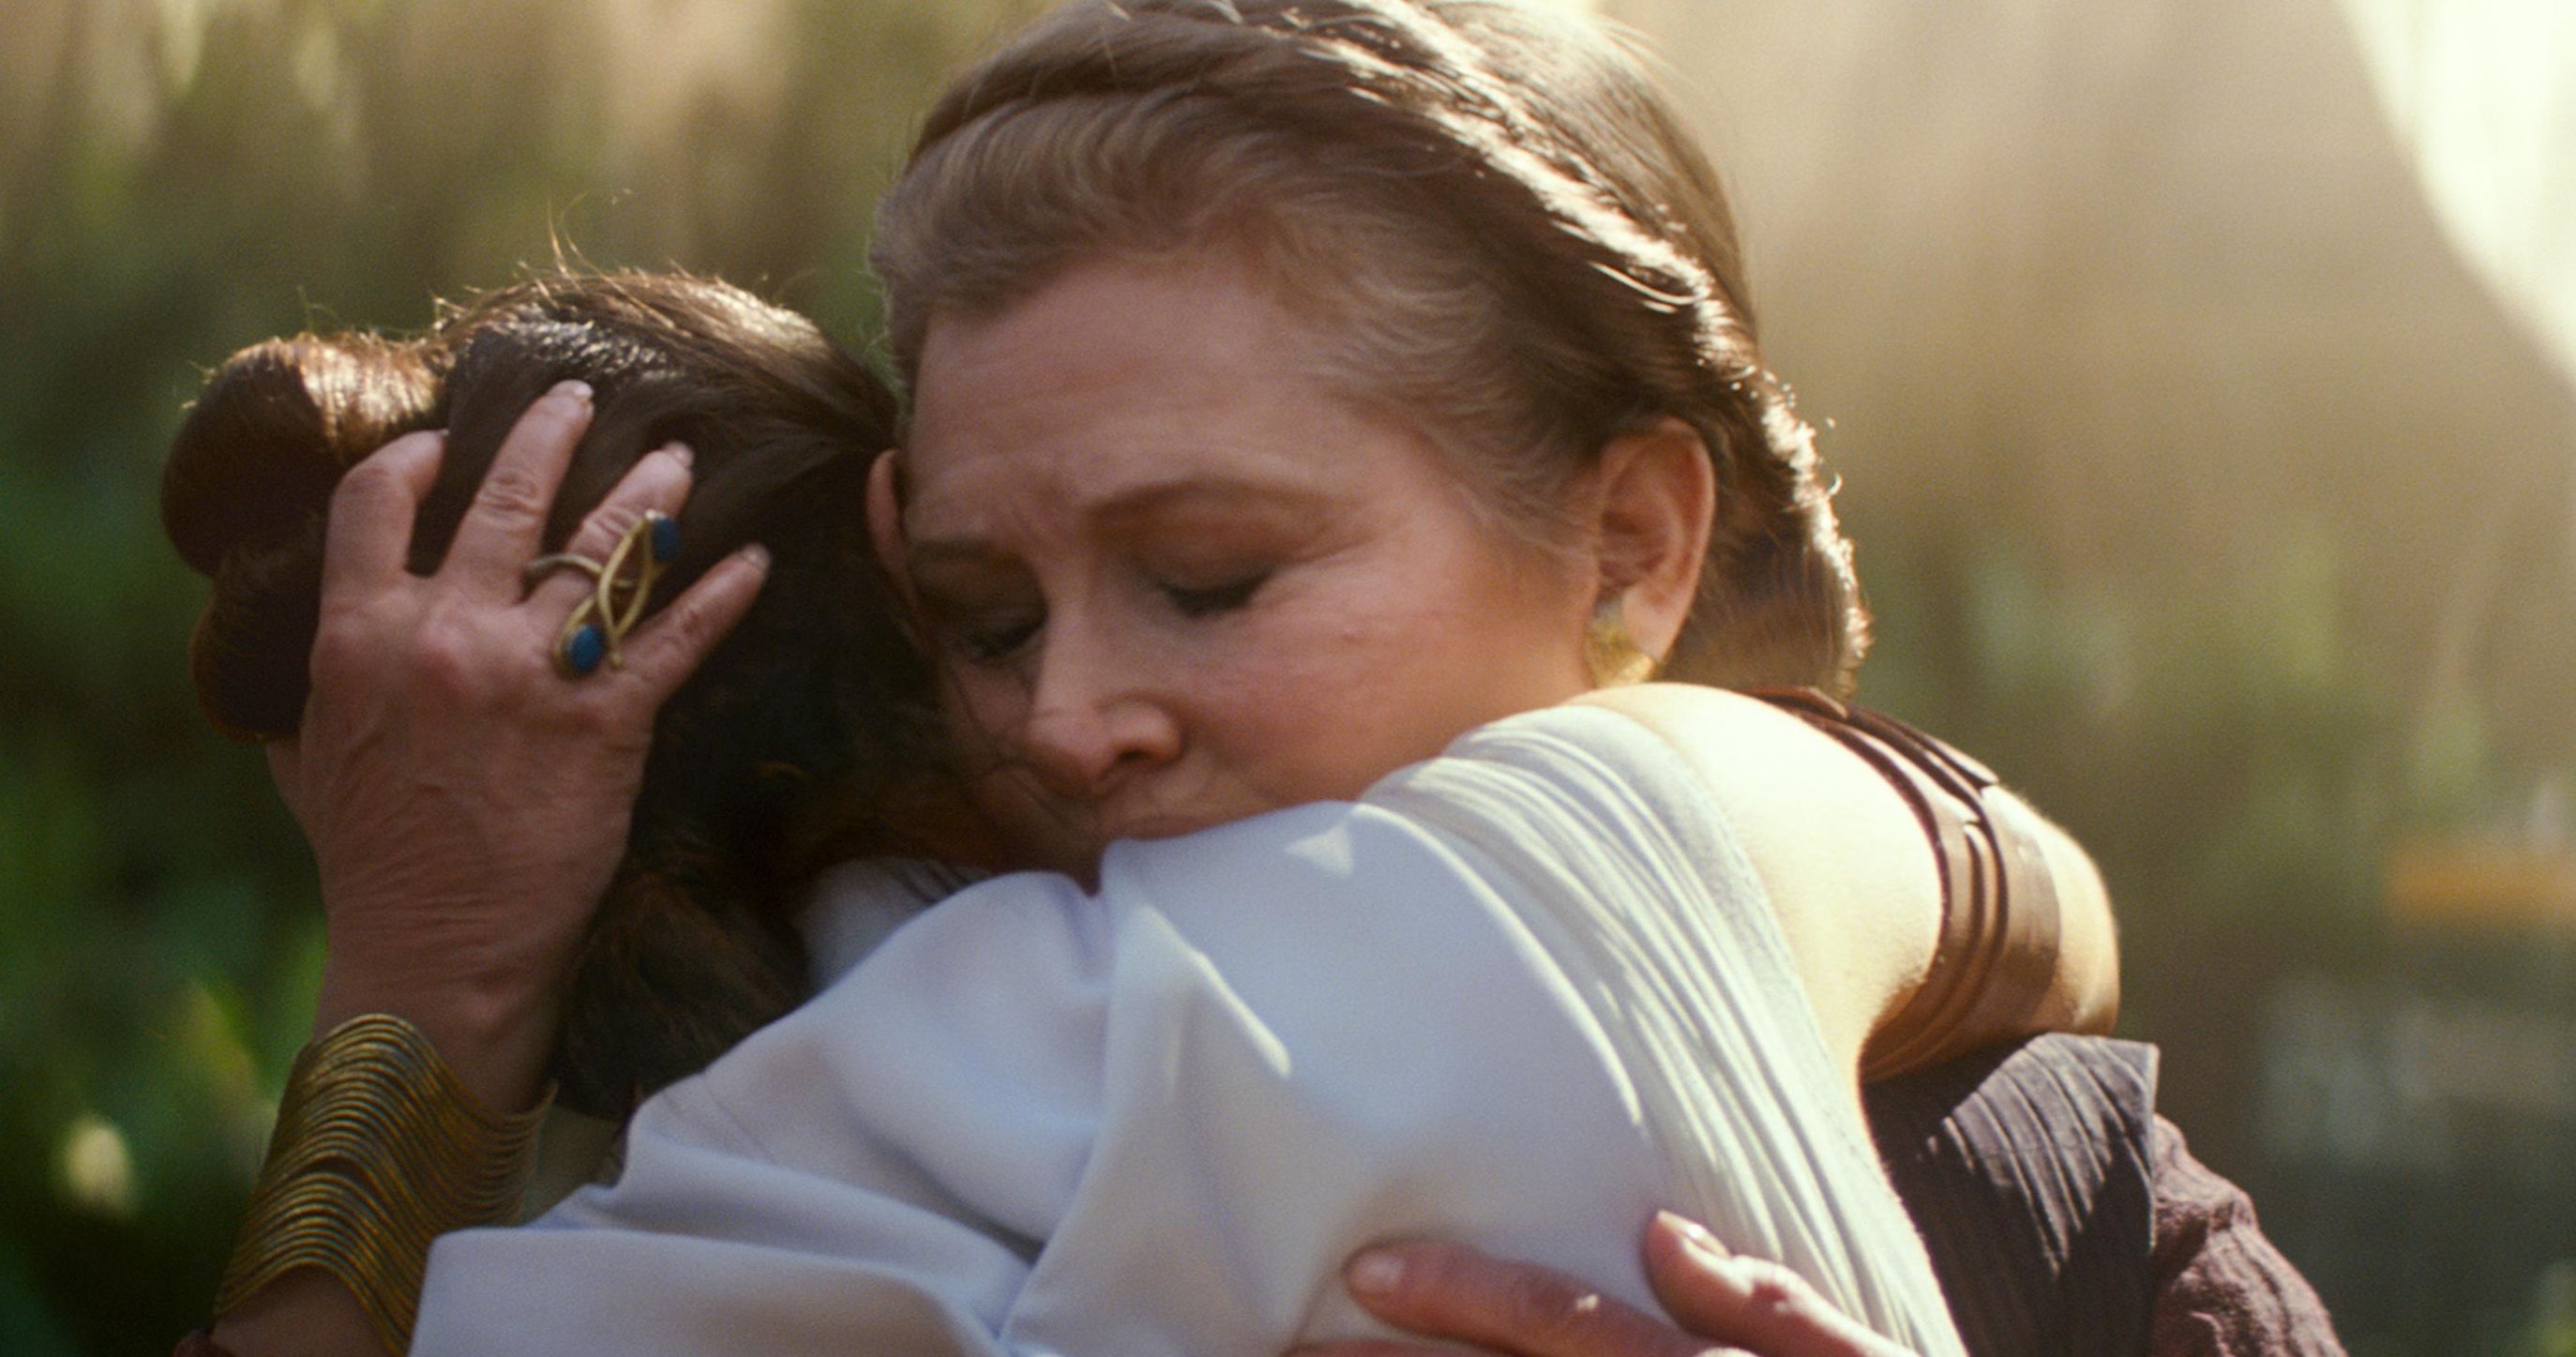 Carrie Fisher's Naughty Whisper in That Long Rise of Skywalker Hug Revealed